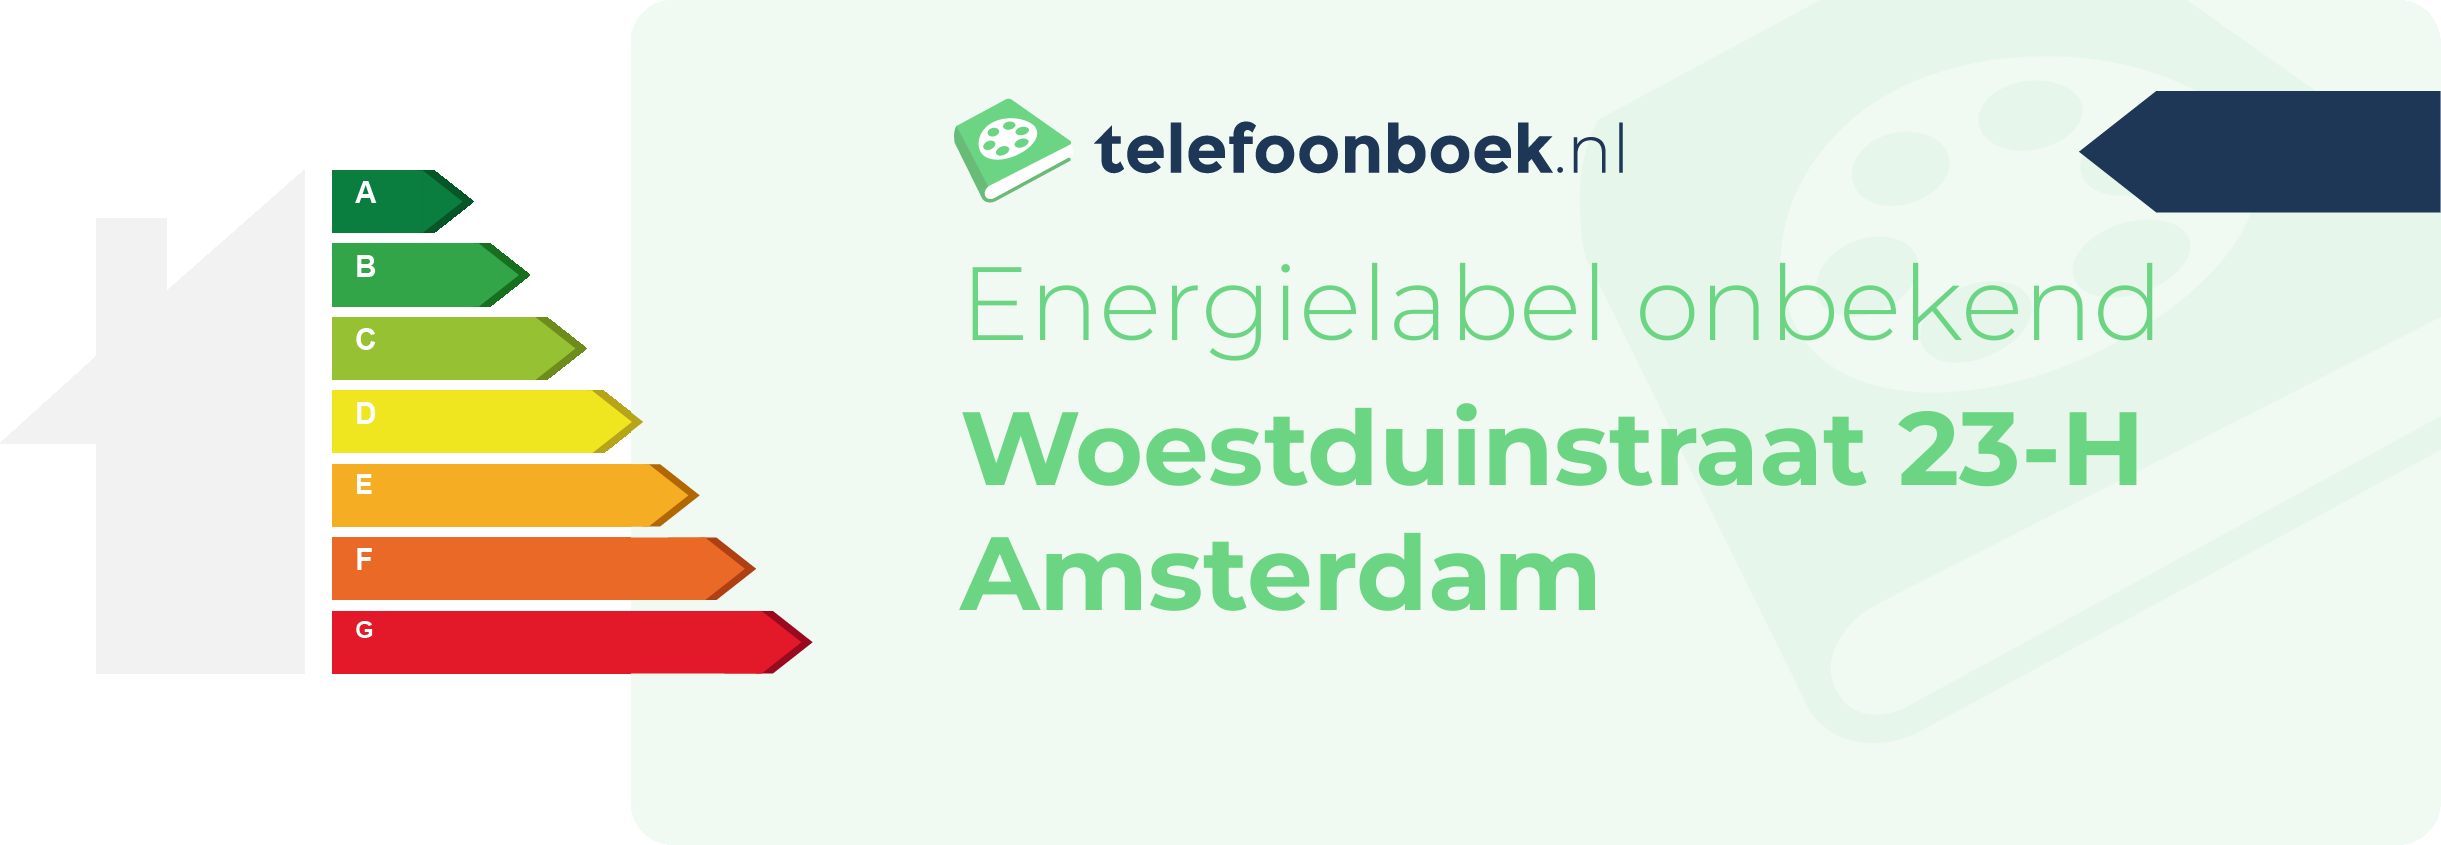 Energielabel Woestduinstraat 23-H Amsterdam